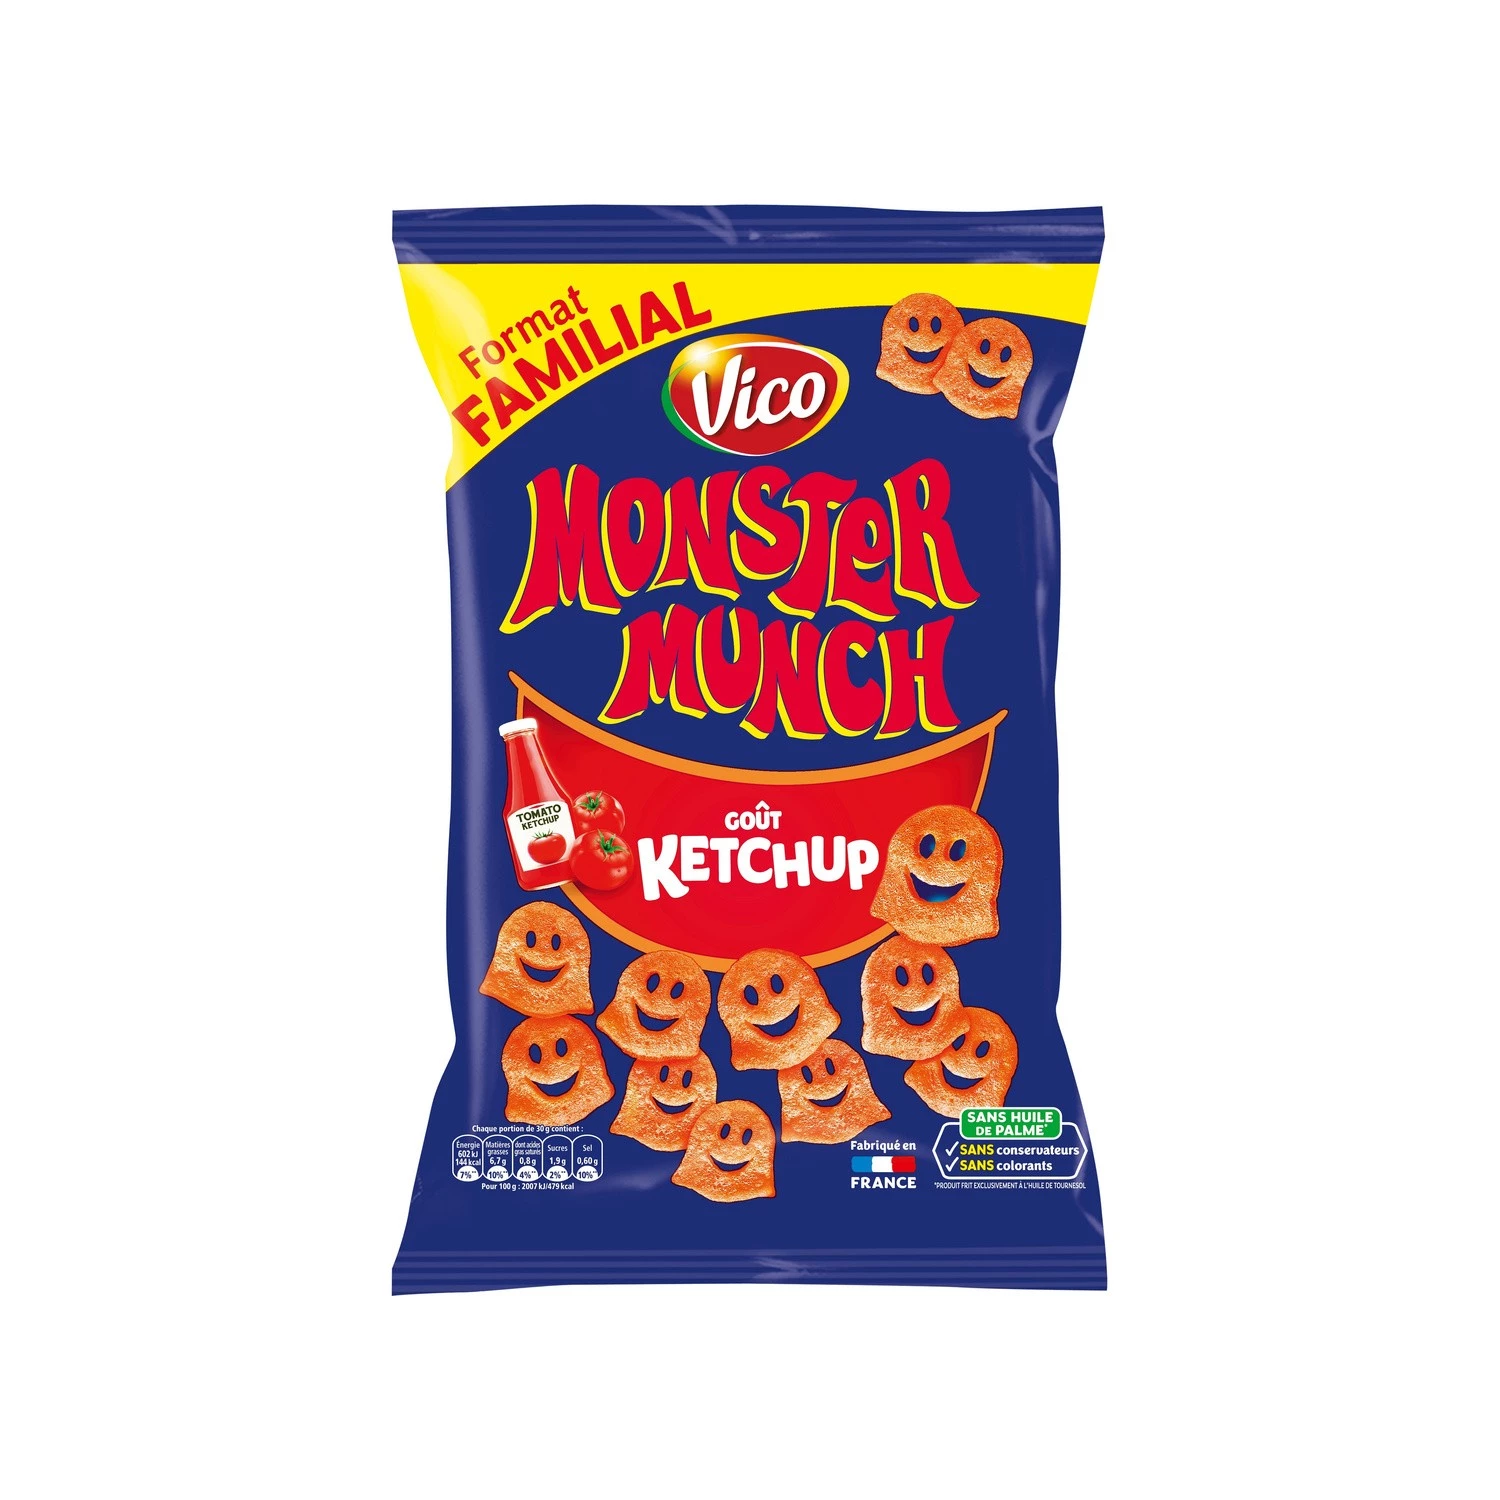 Sốt cà chua Monster Munch Goût, 135g - VICO